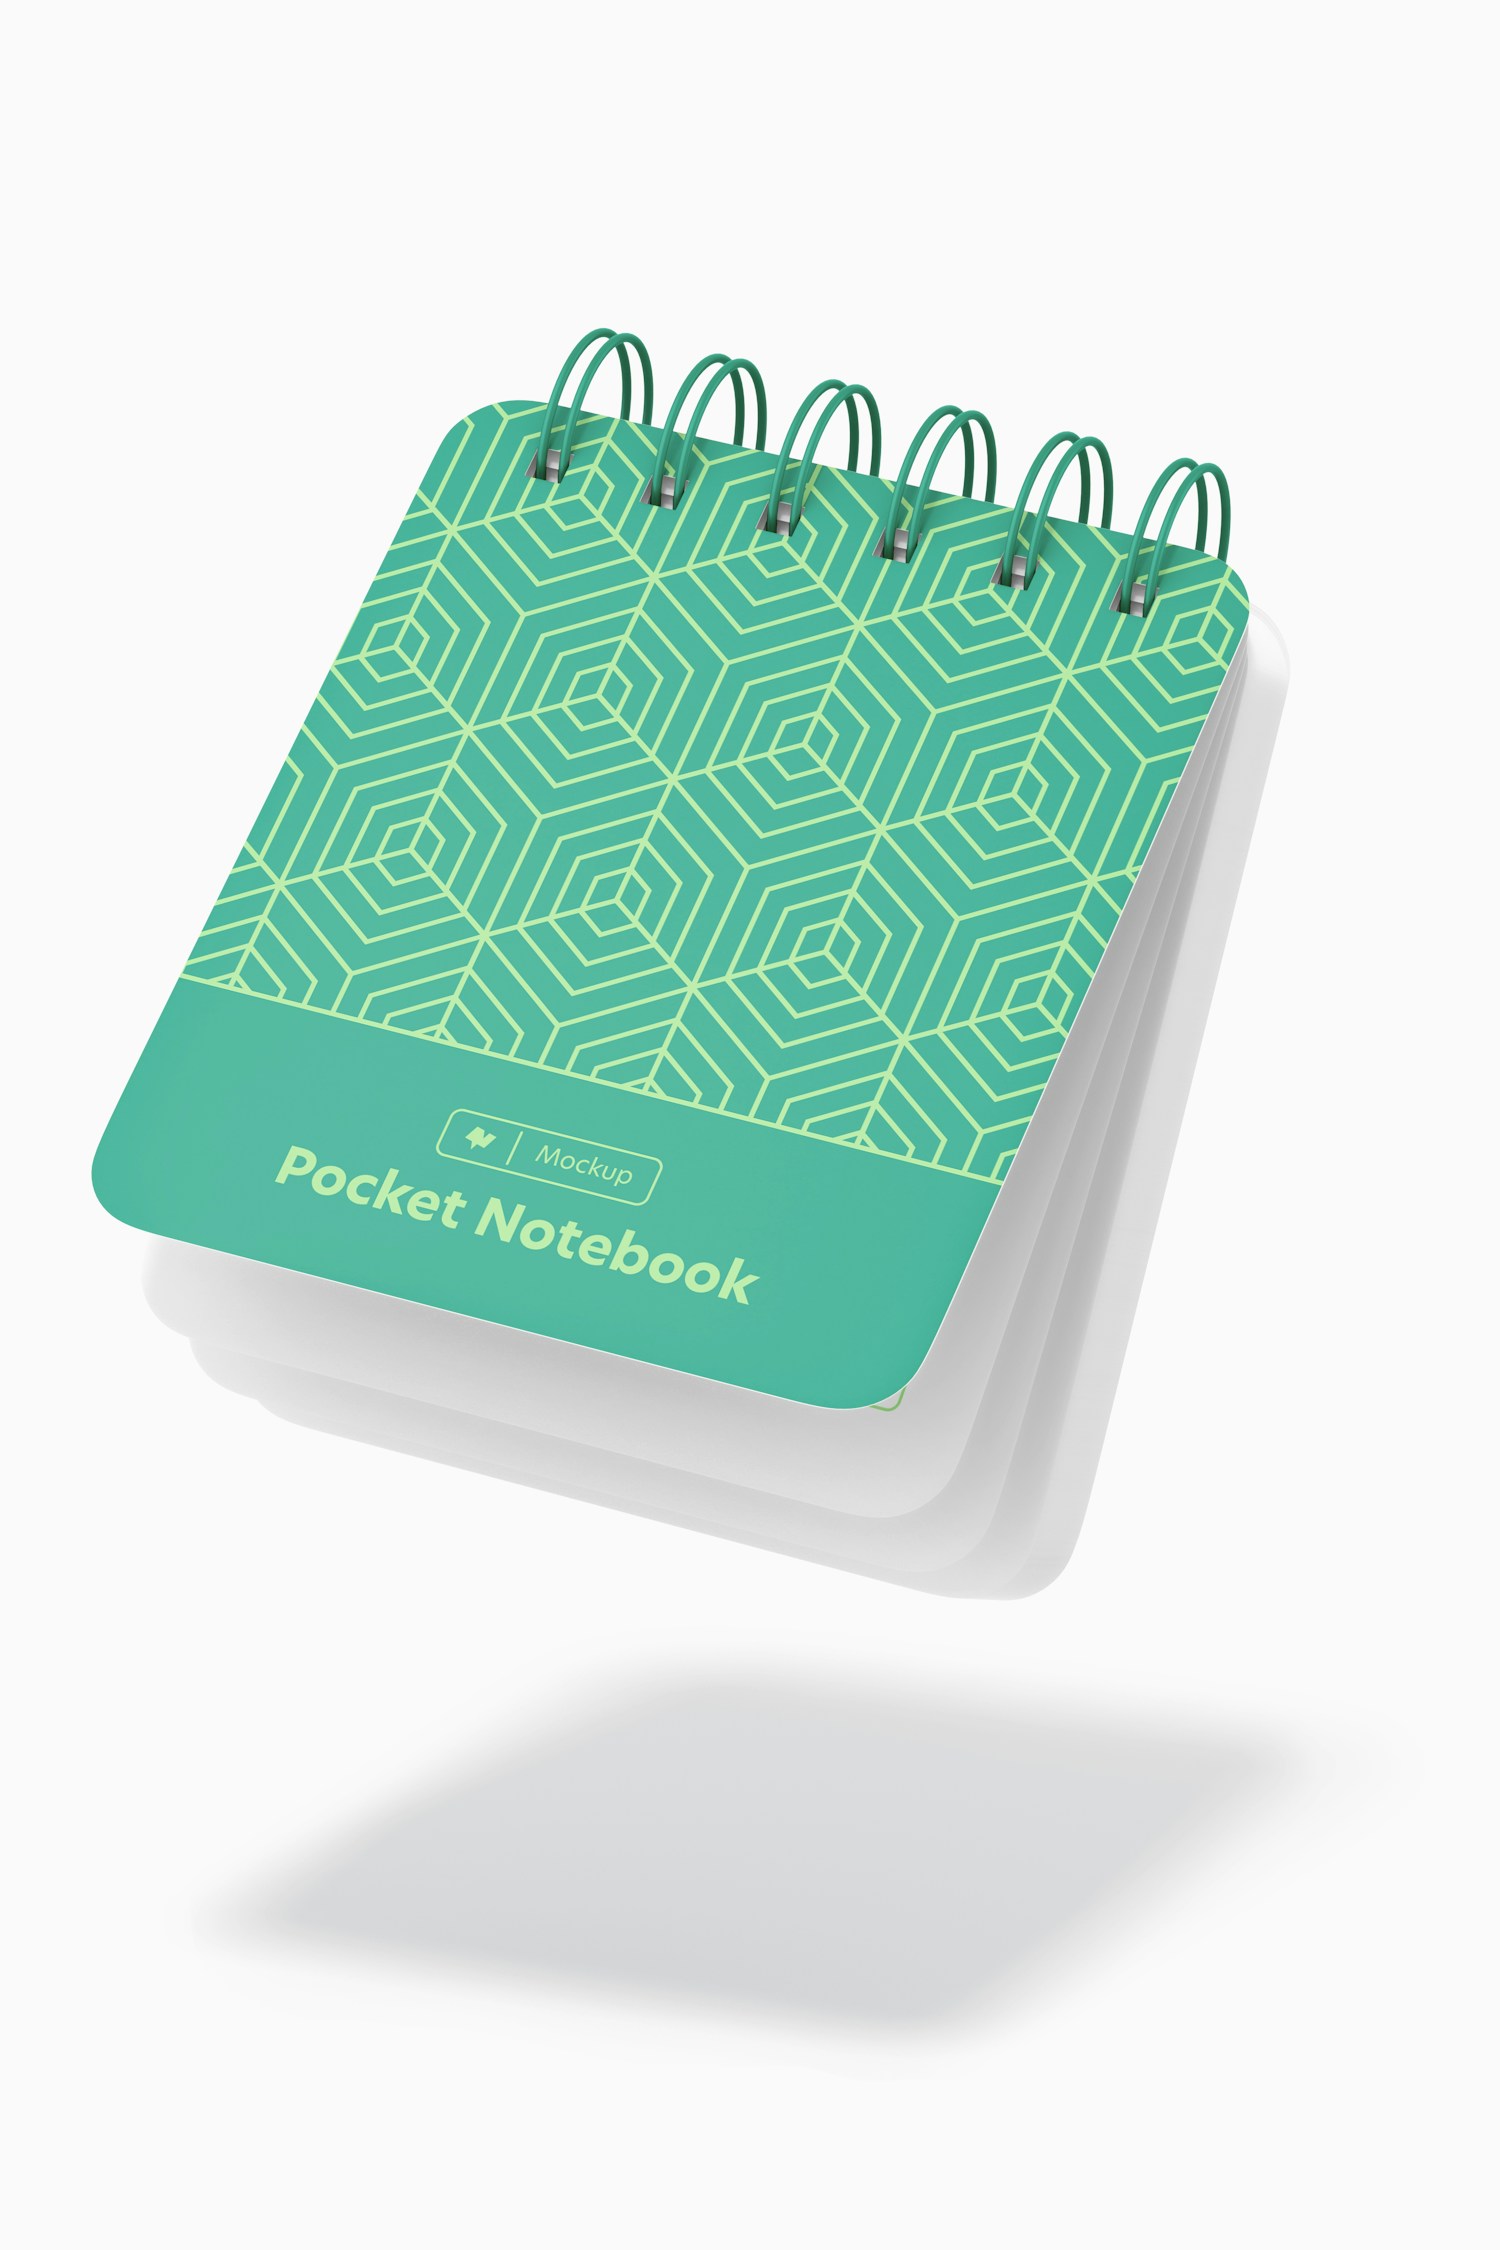 Pocket Notebook Mockup, Floating